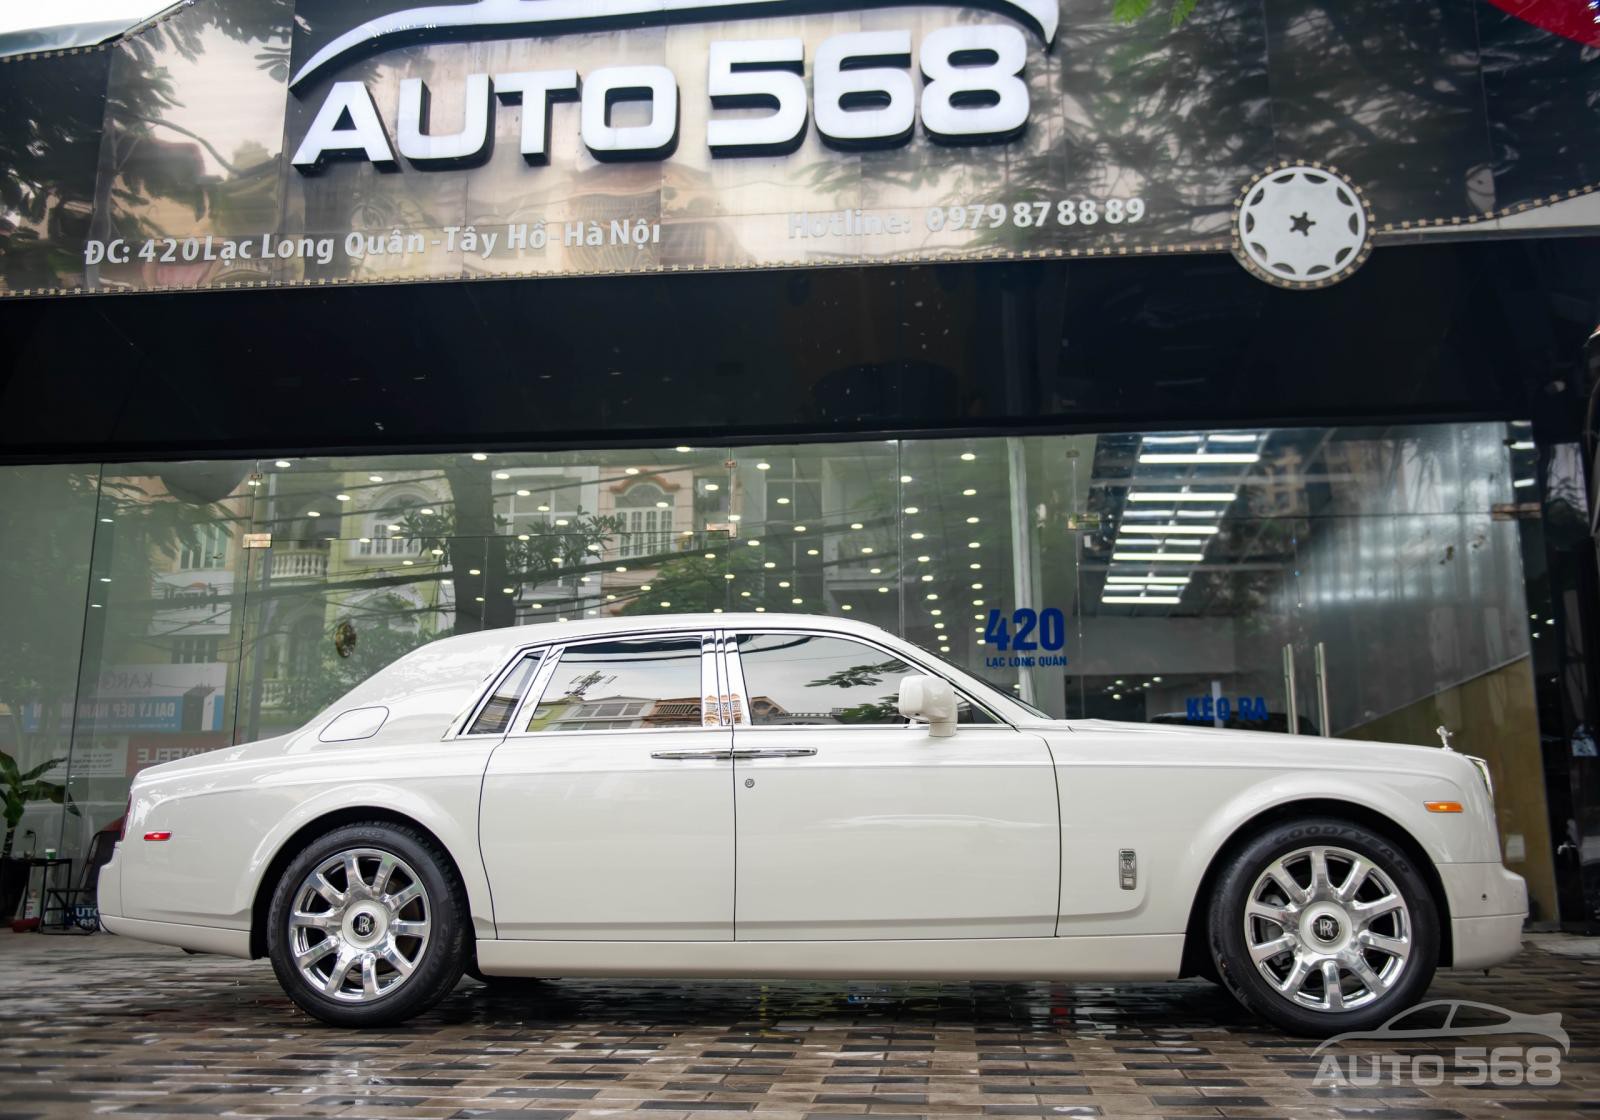 Rolls-Royce Phantom VII 2014 - Bán xe Rolls-Royce Phantom VII 2014, màu trắng, nhập khẩu nguyên chiếc Mỹ, siêu siêu mới, biển VIP